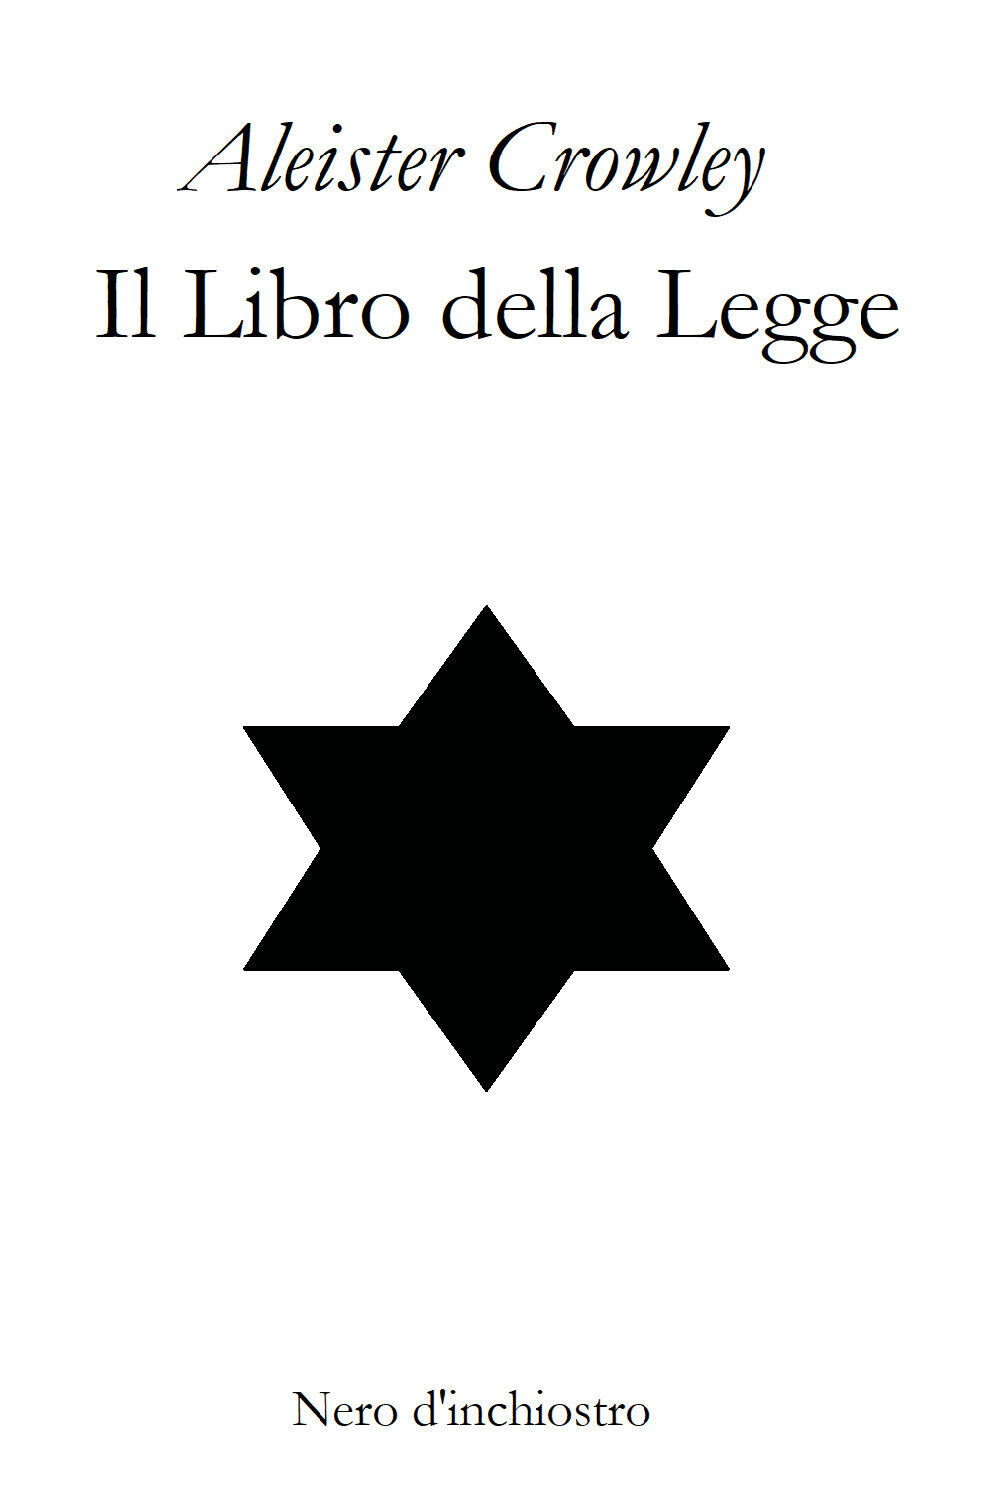 Il Libro della Legge. The Book of The Law. Edizione italiana e inglese (Crowley)